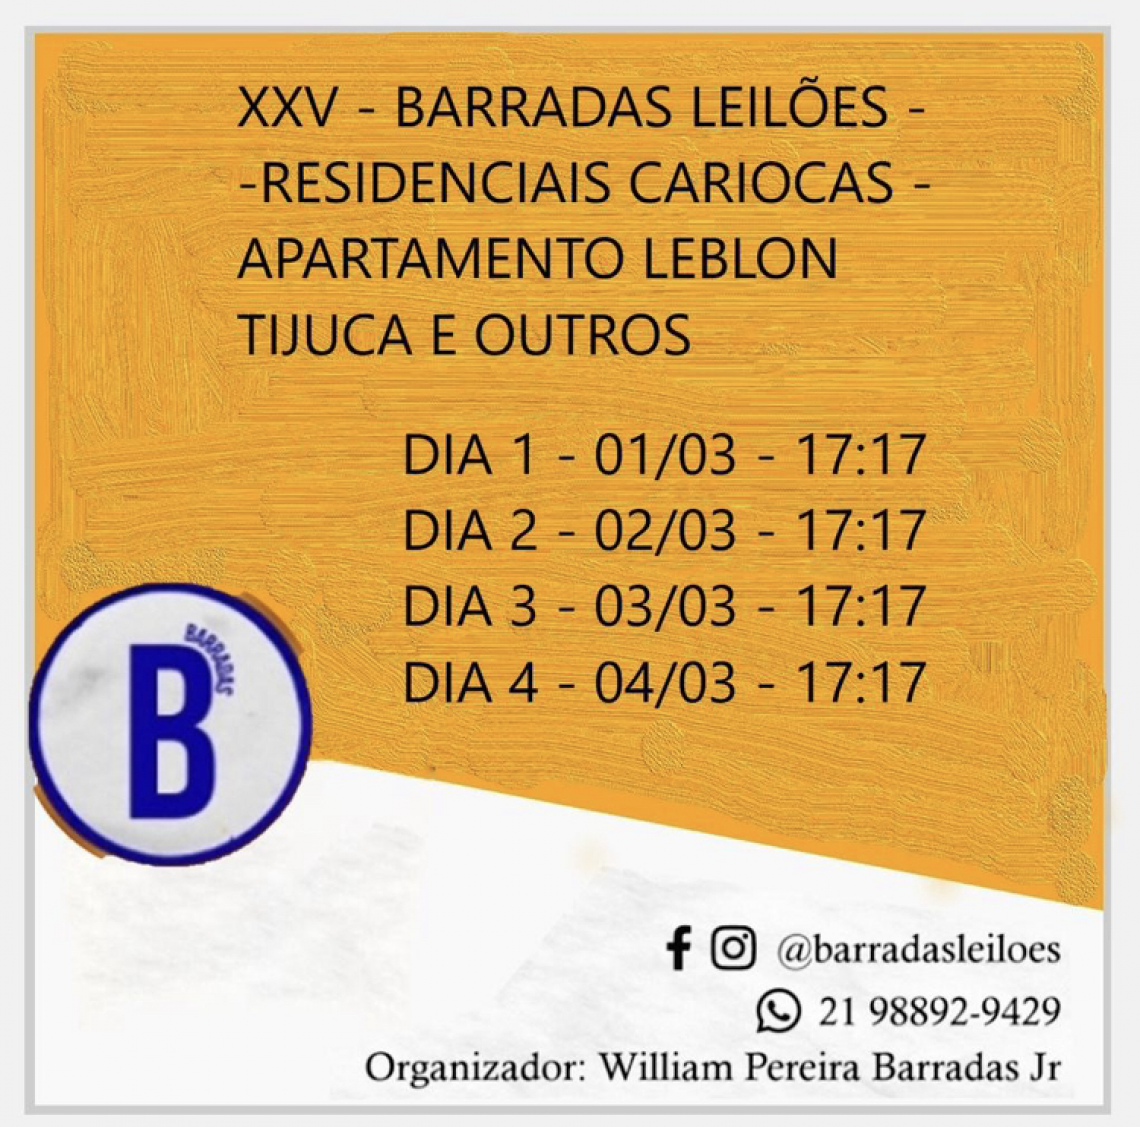 XXV Barradas Leilões - Residenciais Cariocas - Apartamento do Leblon e Tijuca e outros